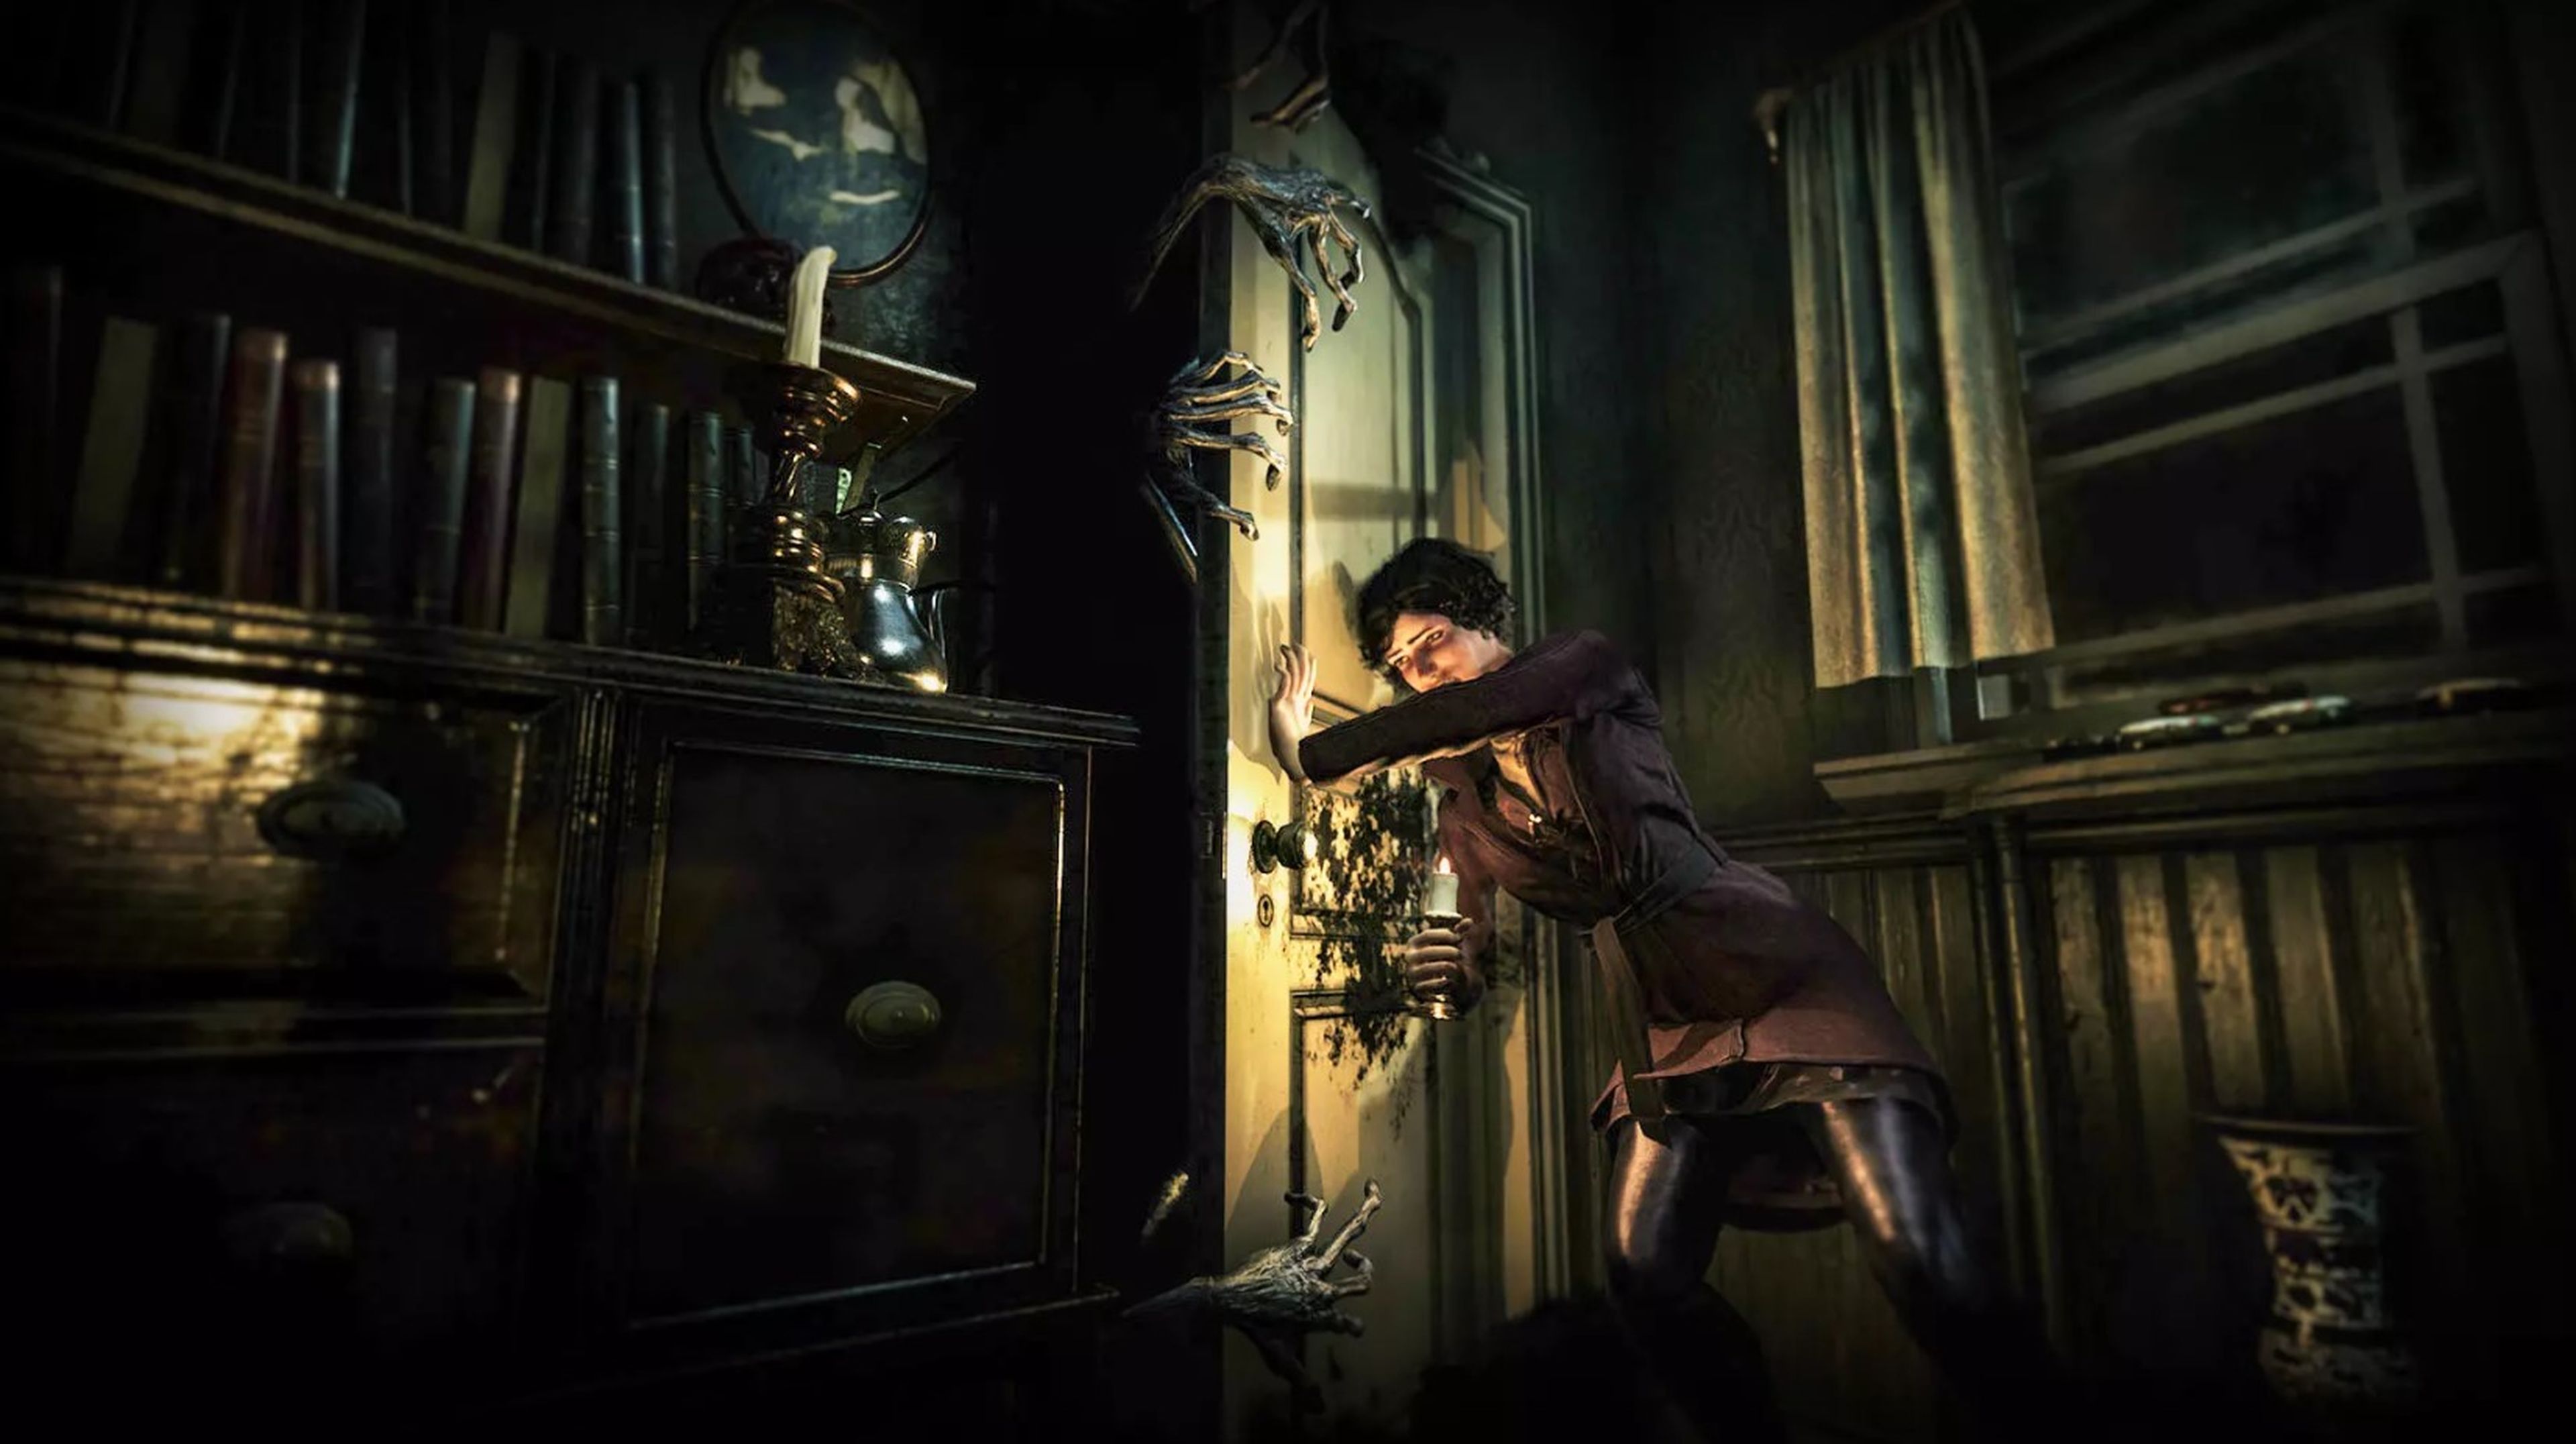 Jogo de terror A Haunting : Witching Hour será lançado para PS4 e PC -  Conversa de Sofá